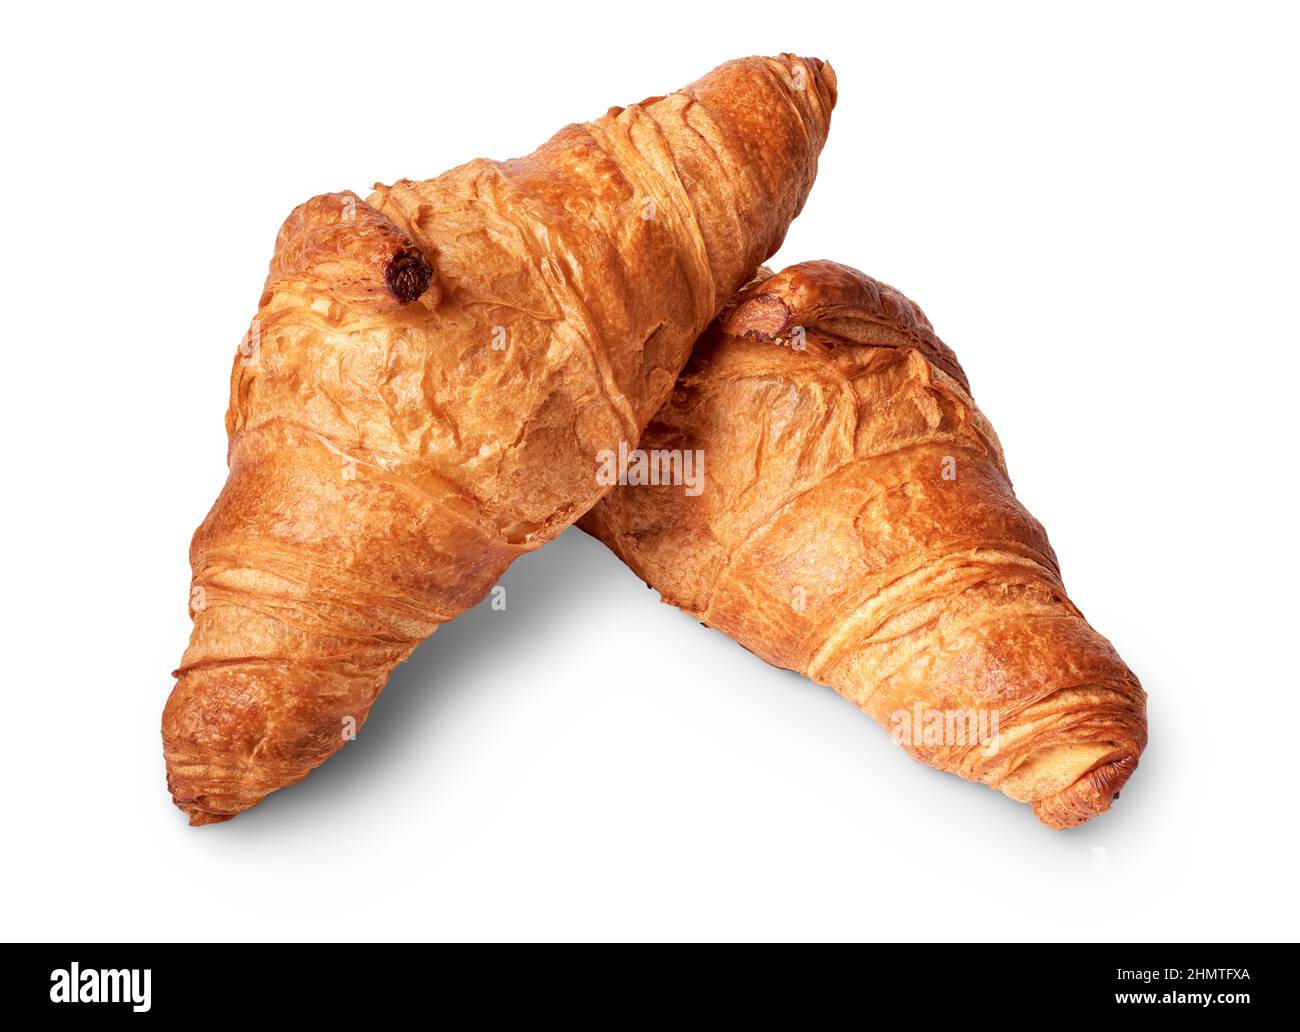 Oggetti isolati: Croissant tradizionale, panetteria francese con pasta sfoglia, su sfondo bianco Foto Stock